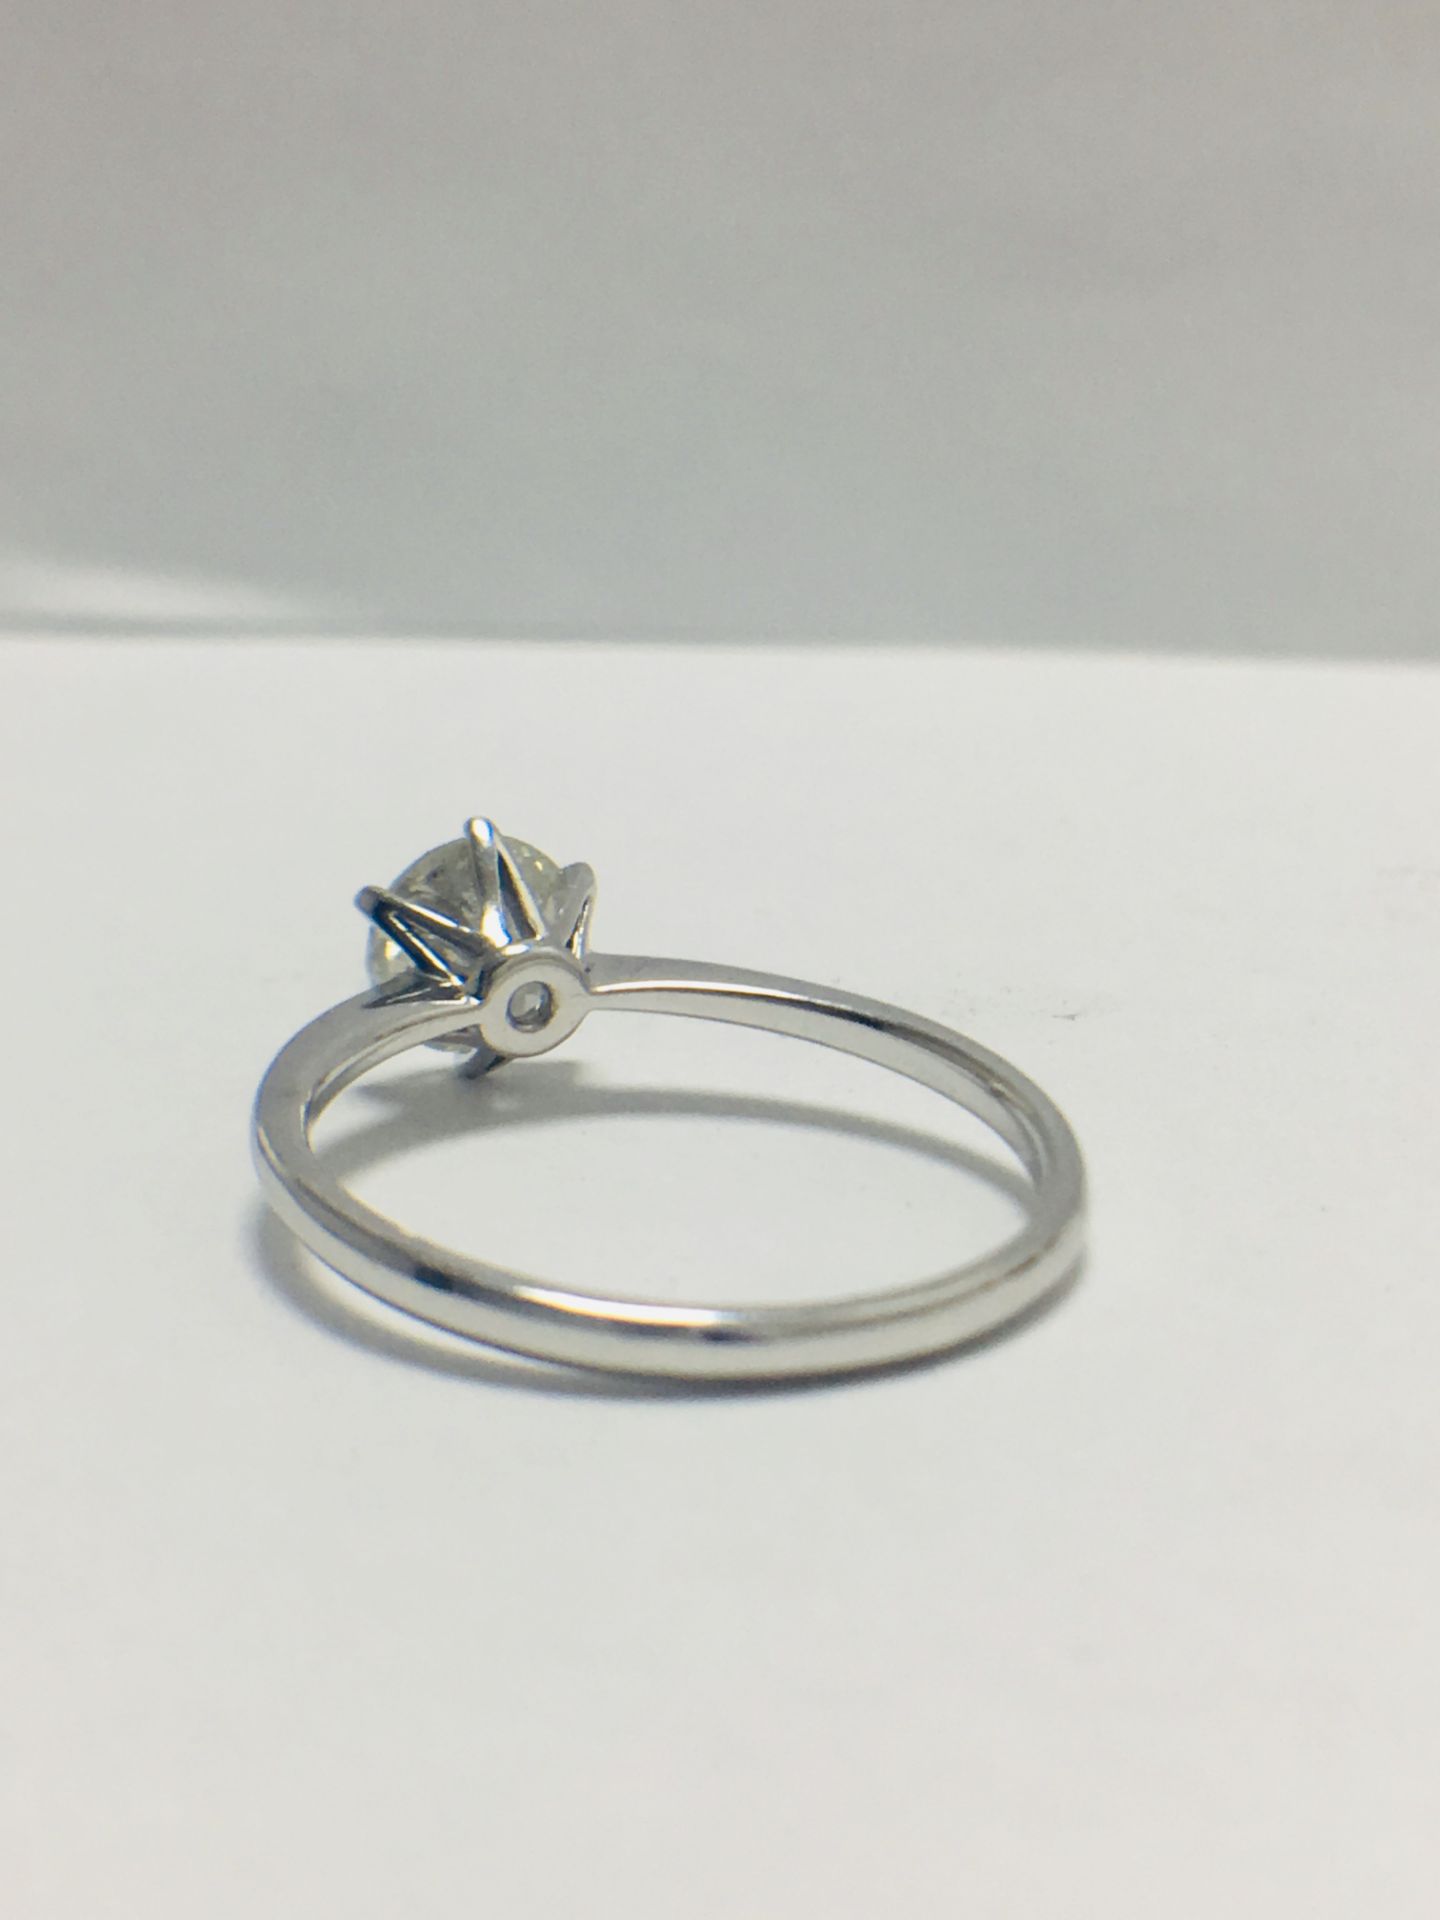 1ct Platinum Diamond Solitaire Ring - Image 4 of 8